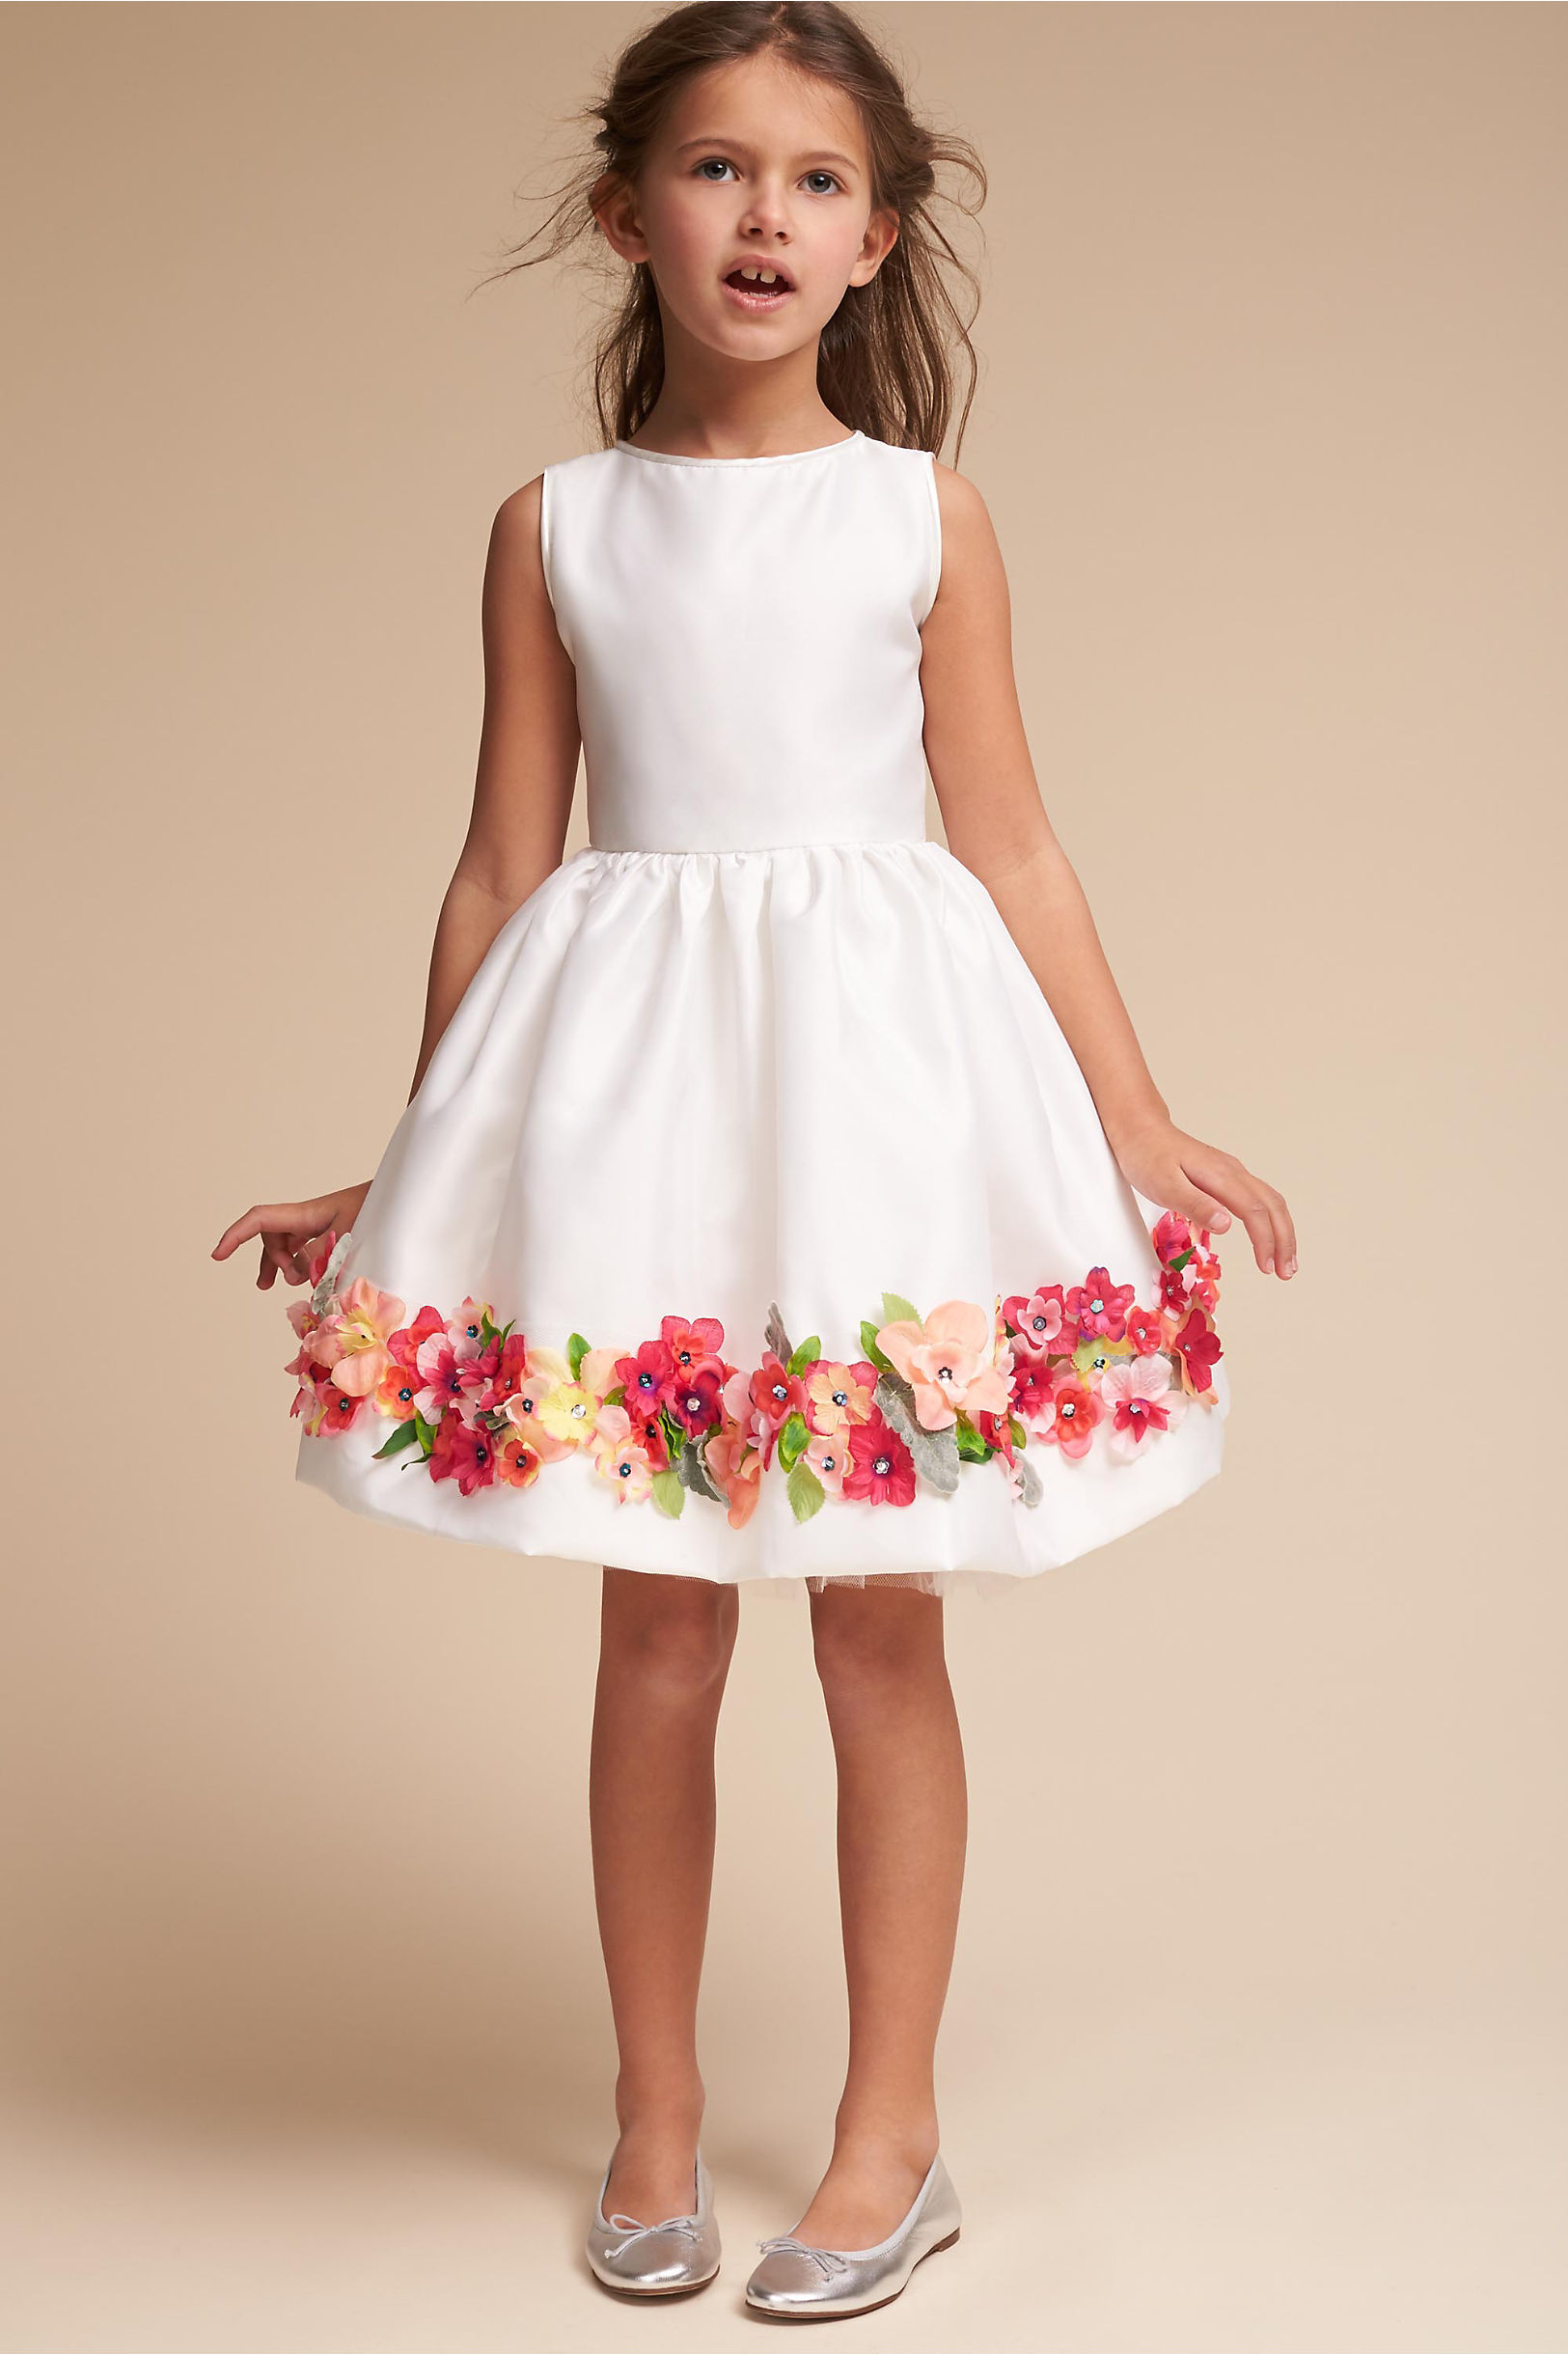 Flower Girl Dresses - Ivory &amp- White Flower Girls&-39- Dresses - BHLDN